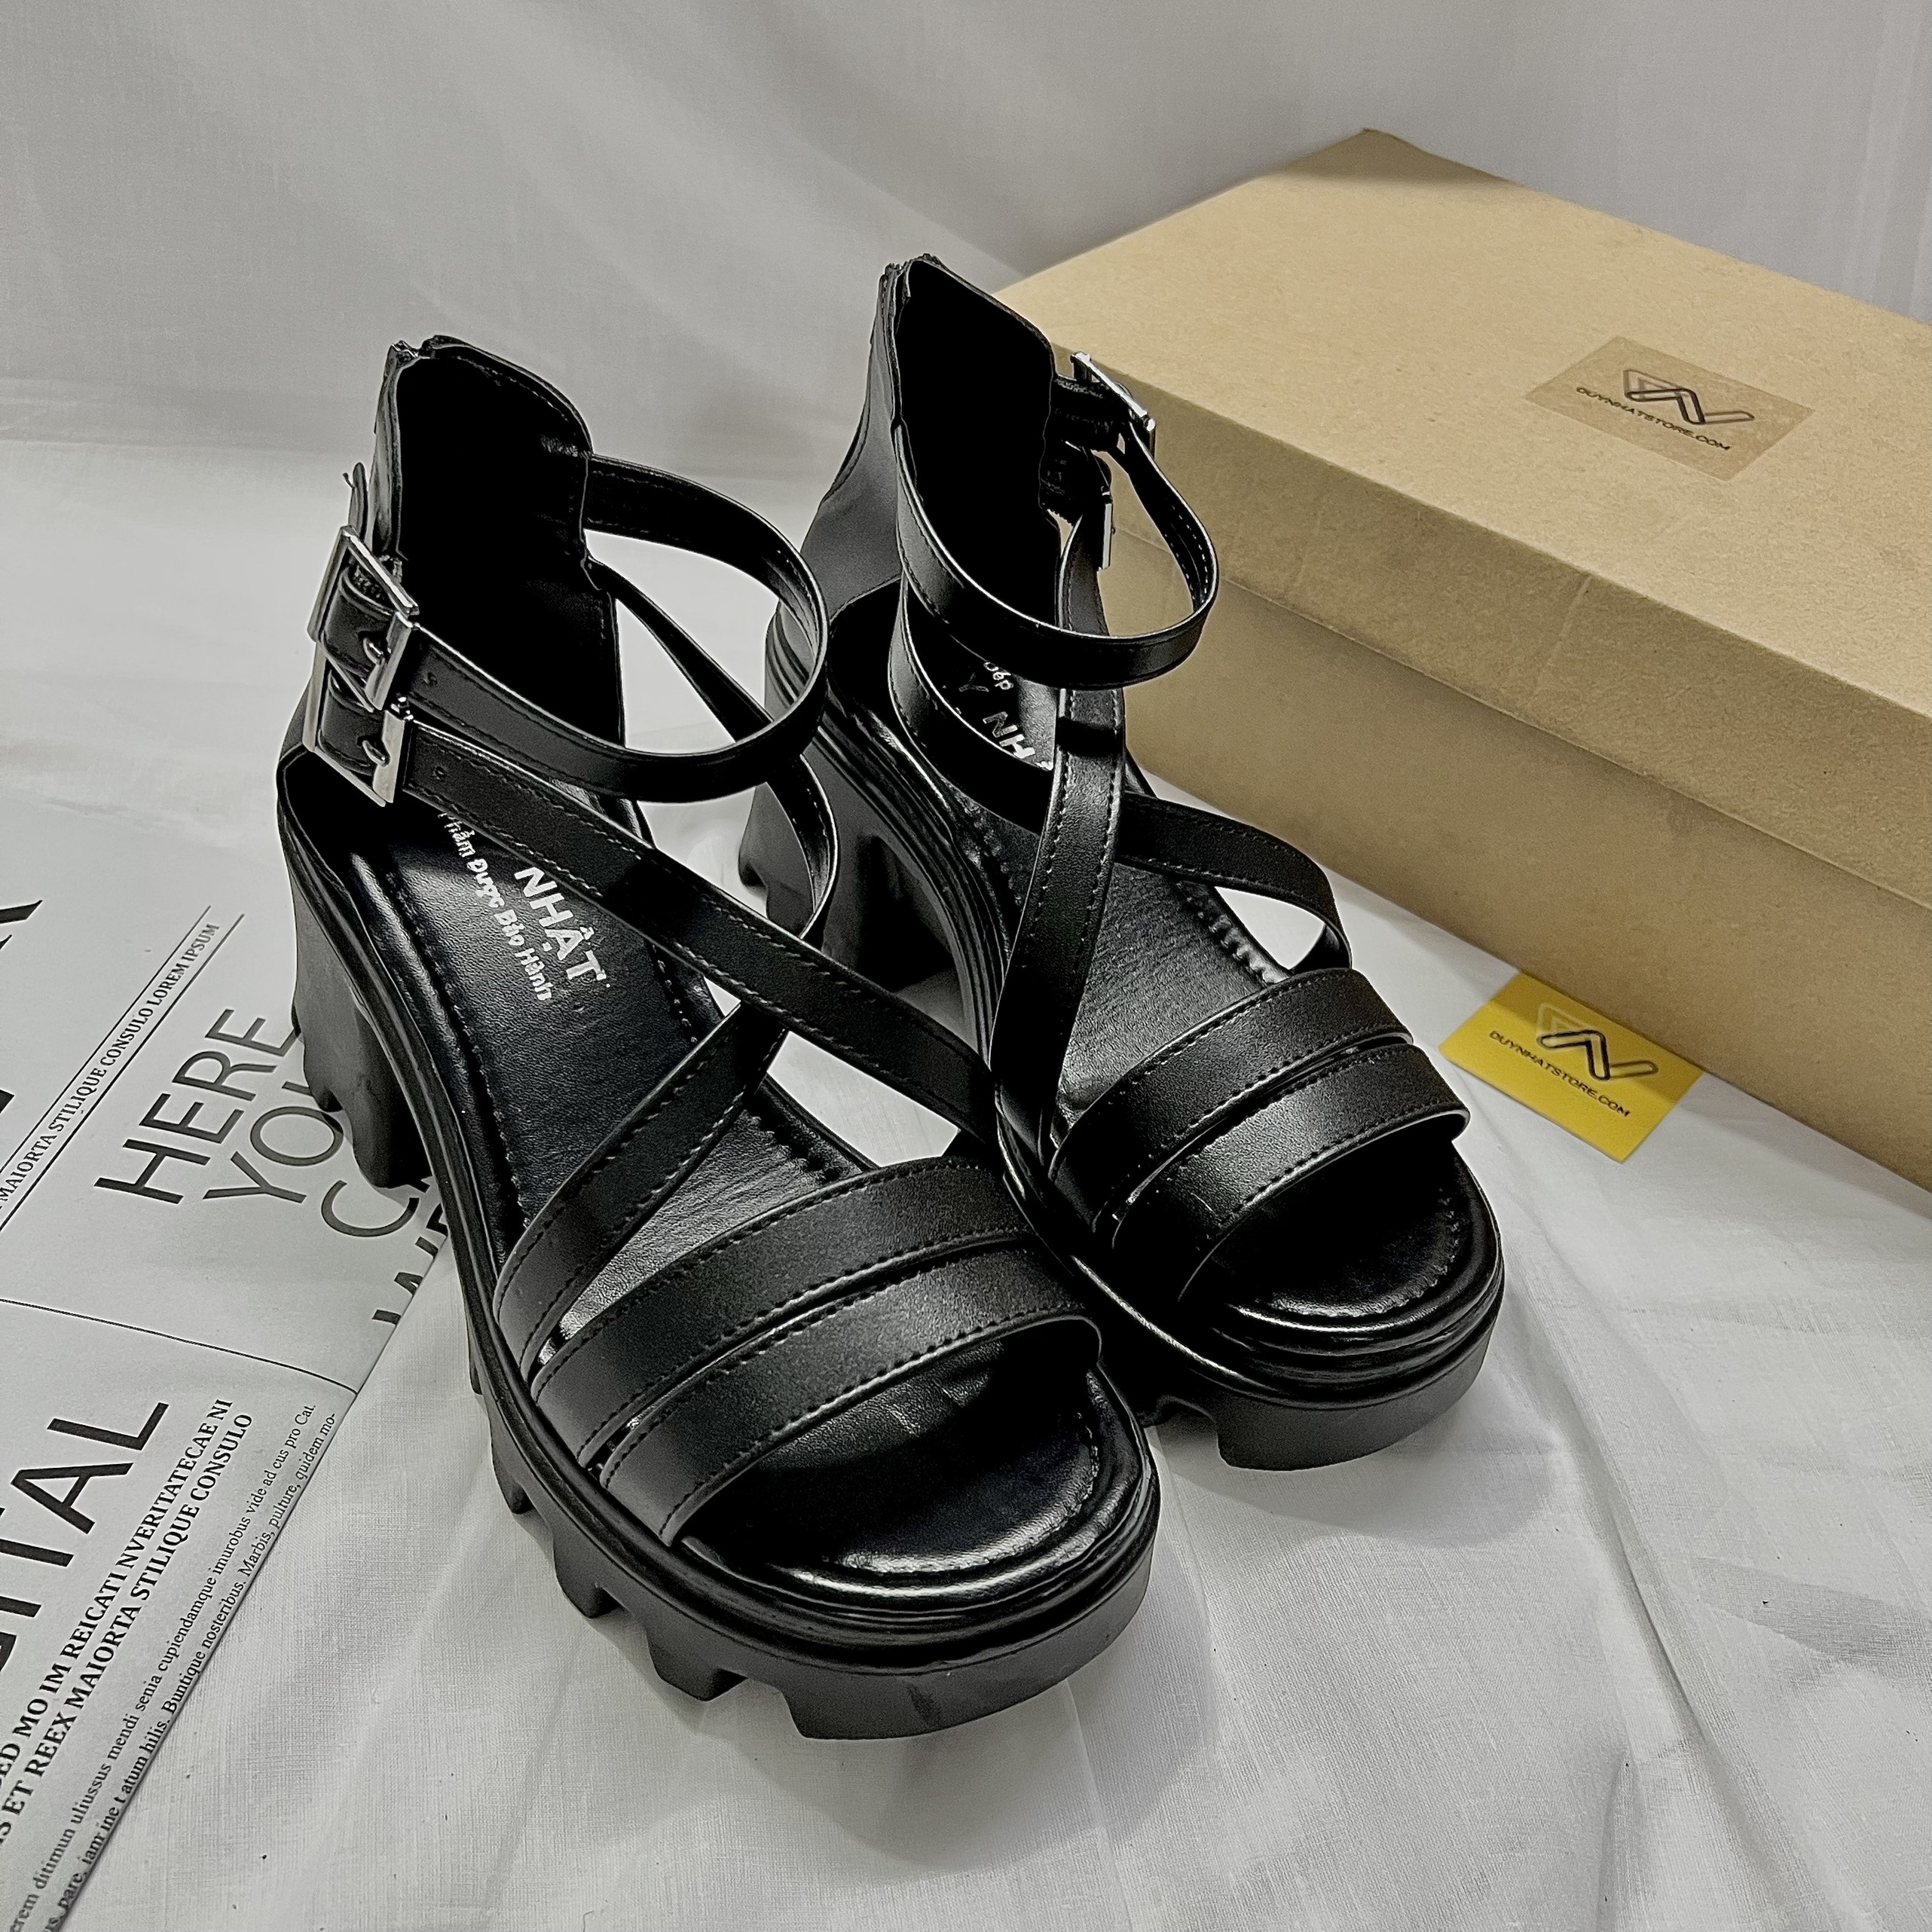 Giày Sandal Nữ Quai Ngang Đế Độn Bánh Mì Màu Trắng Đen Dây Mảnh Nhỏ Duy Nhật Store Bền Uzzang Chiến Binh Dây Kéo Cao 7cm